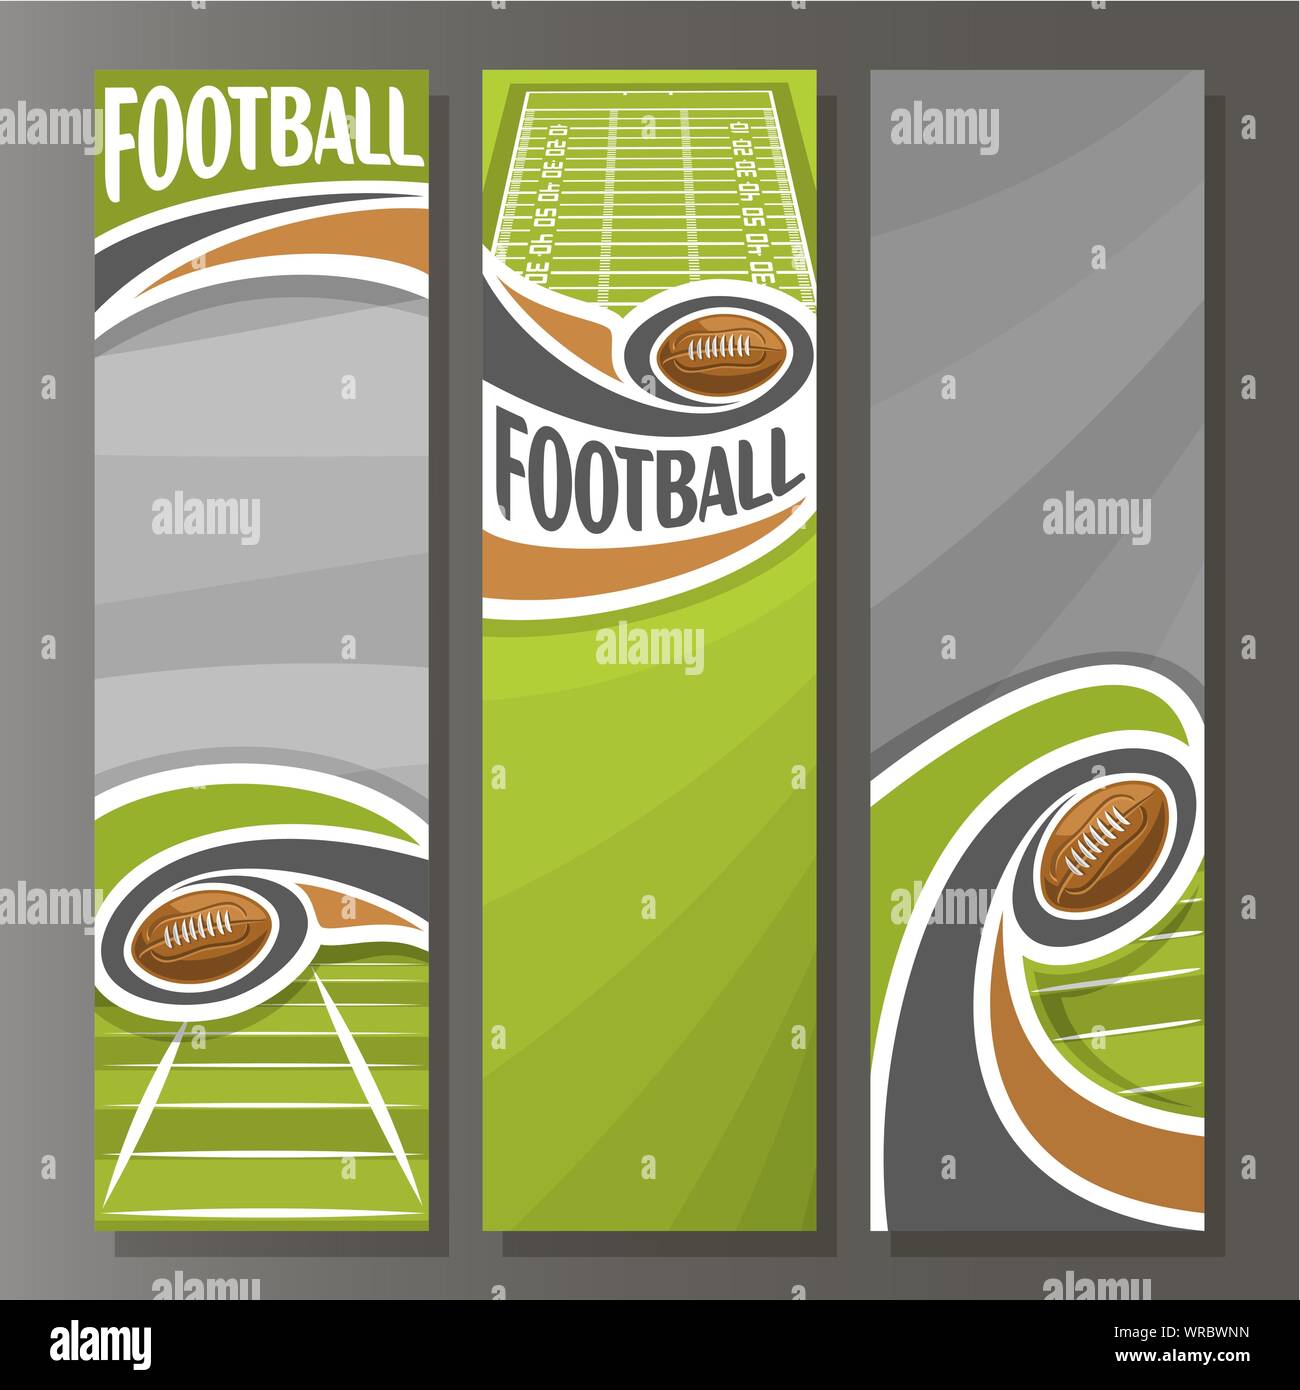 Vettore banner verticale per il football americano: 3 modelli per testo sul tema calcistico, campo di volo con palla ovale su sfondo grigio. Illustrazione Vettoriale